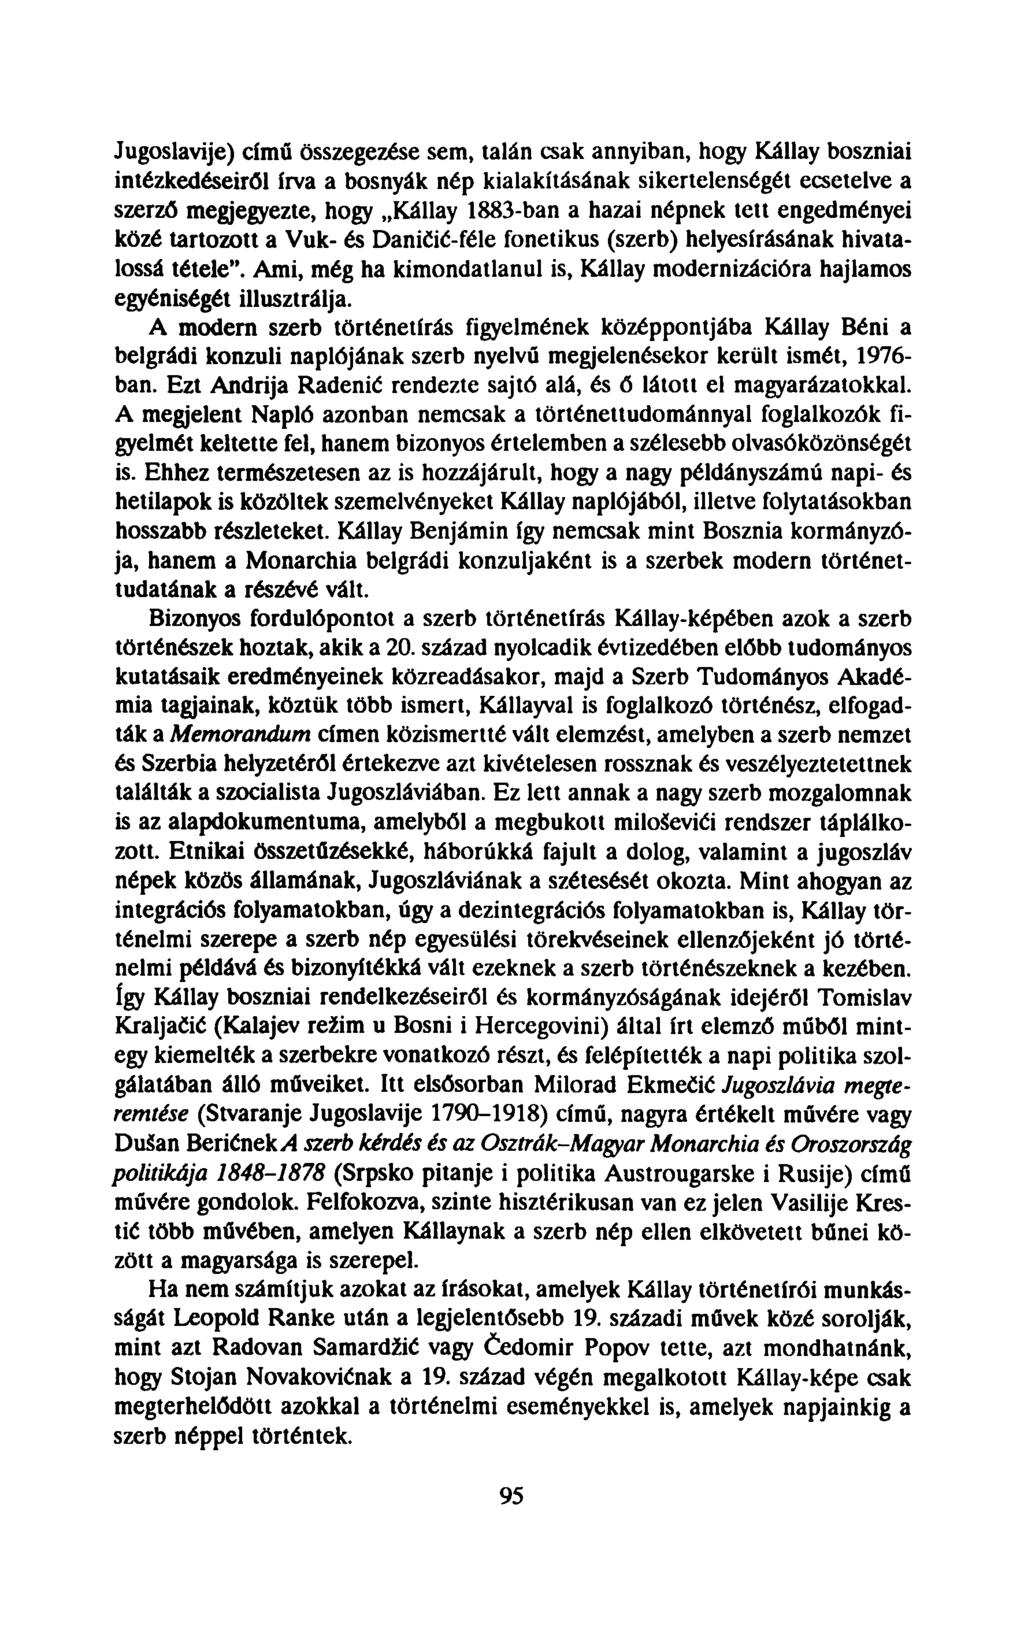 Jugoslavije) című összegezése sem, talán csak annyiban, hogy Kállay boszniai intézkedéseiről írva a bosnyák nép kialakításának sikertelenségét ecsetelve a szerző megjegyezte, hogy Kállay 1883-ban a